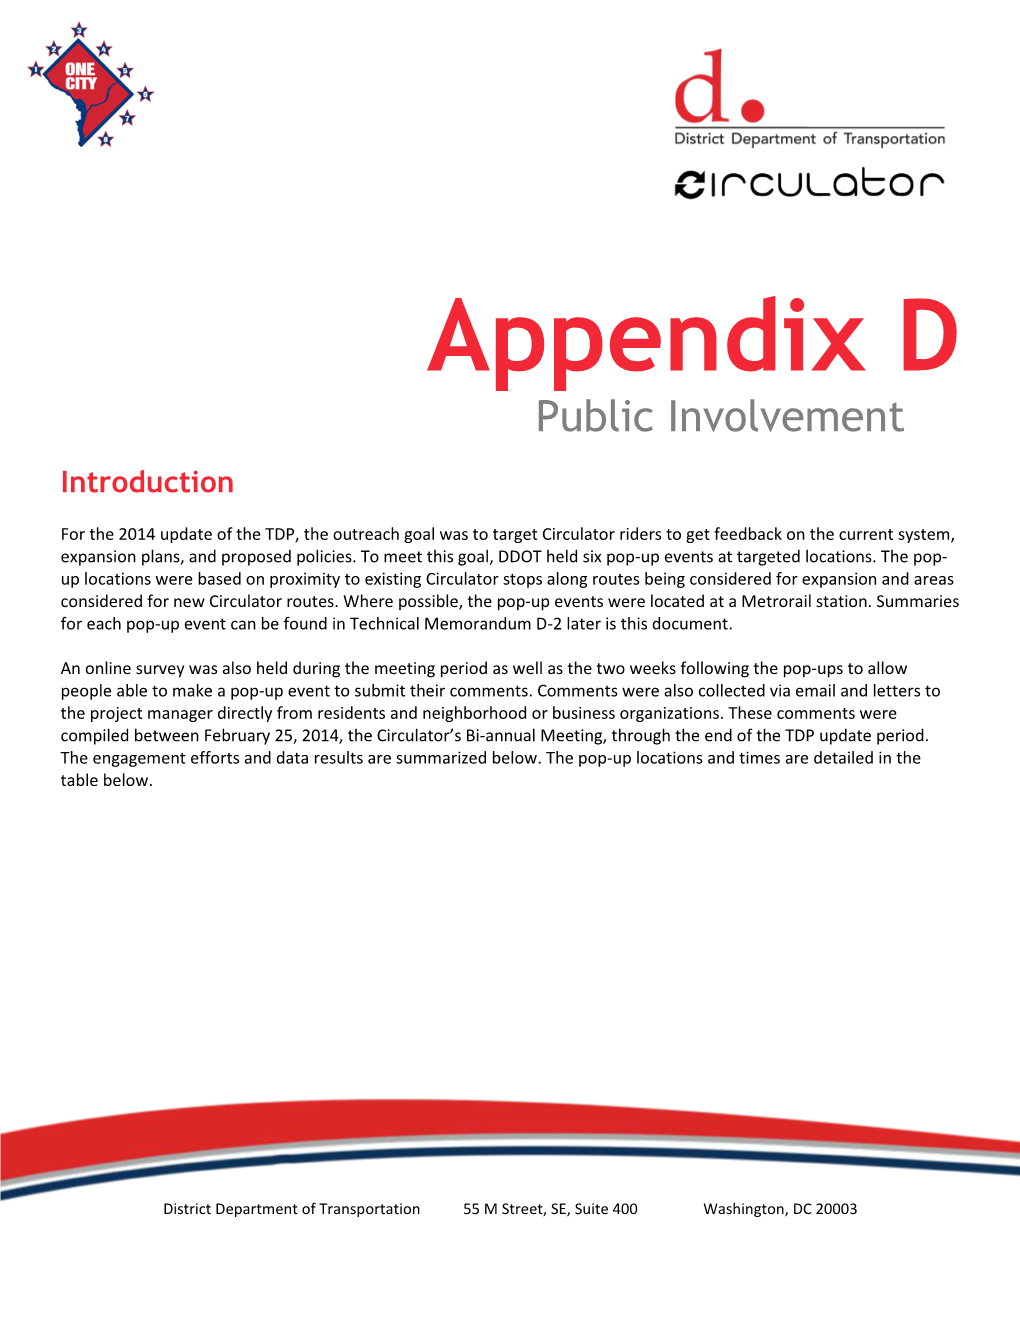 Appendix D Public Involvement